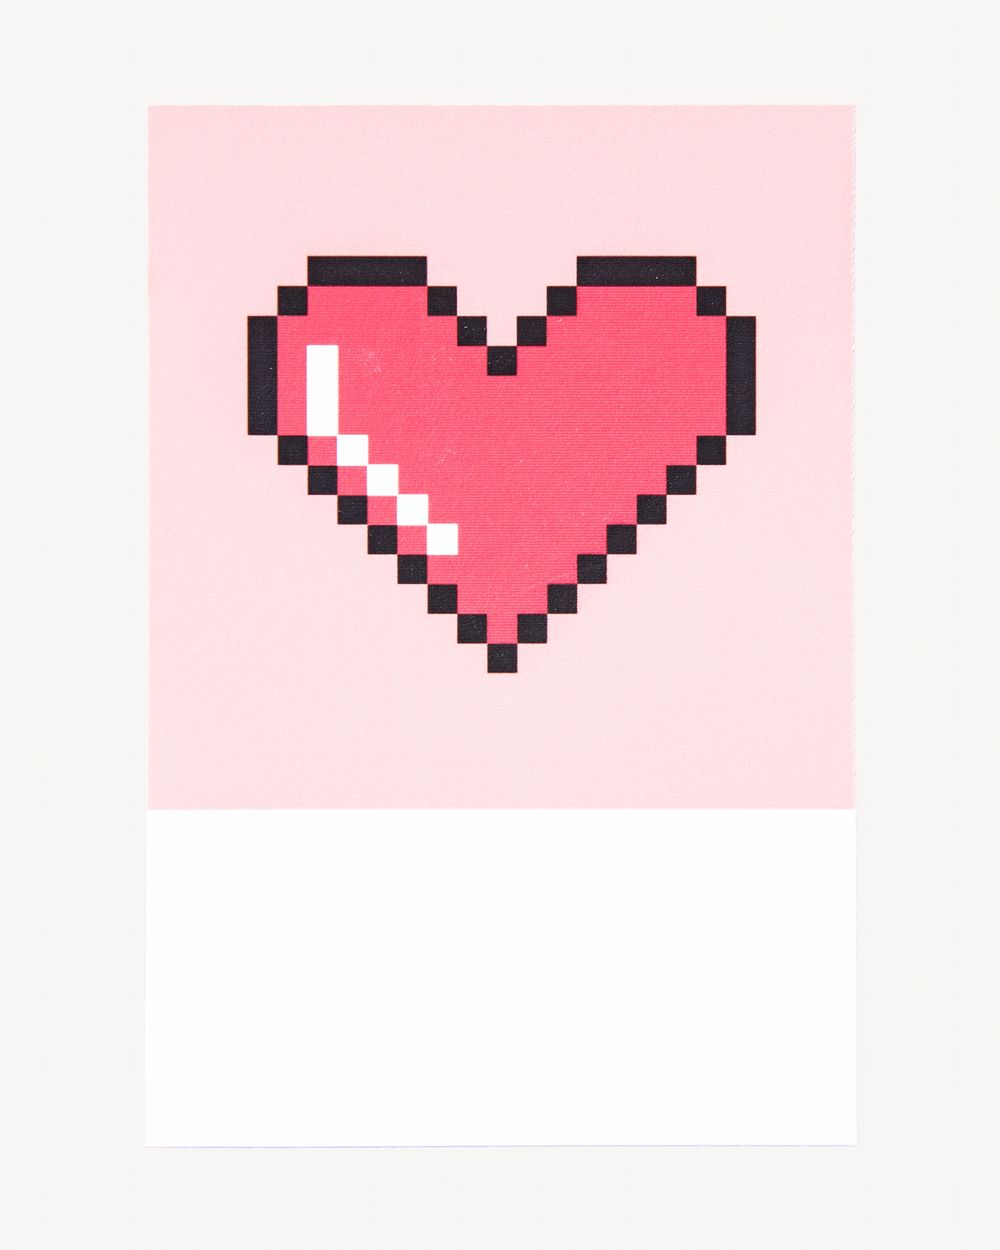 Pixelated heart shape isolated image